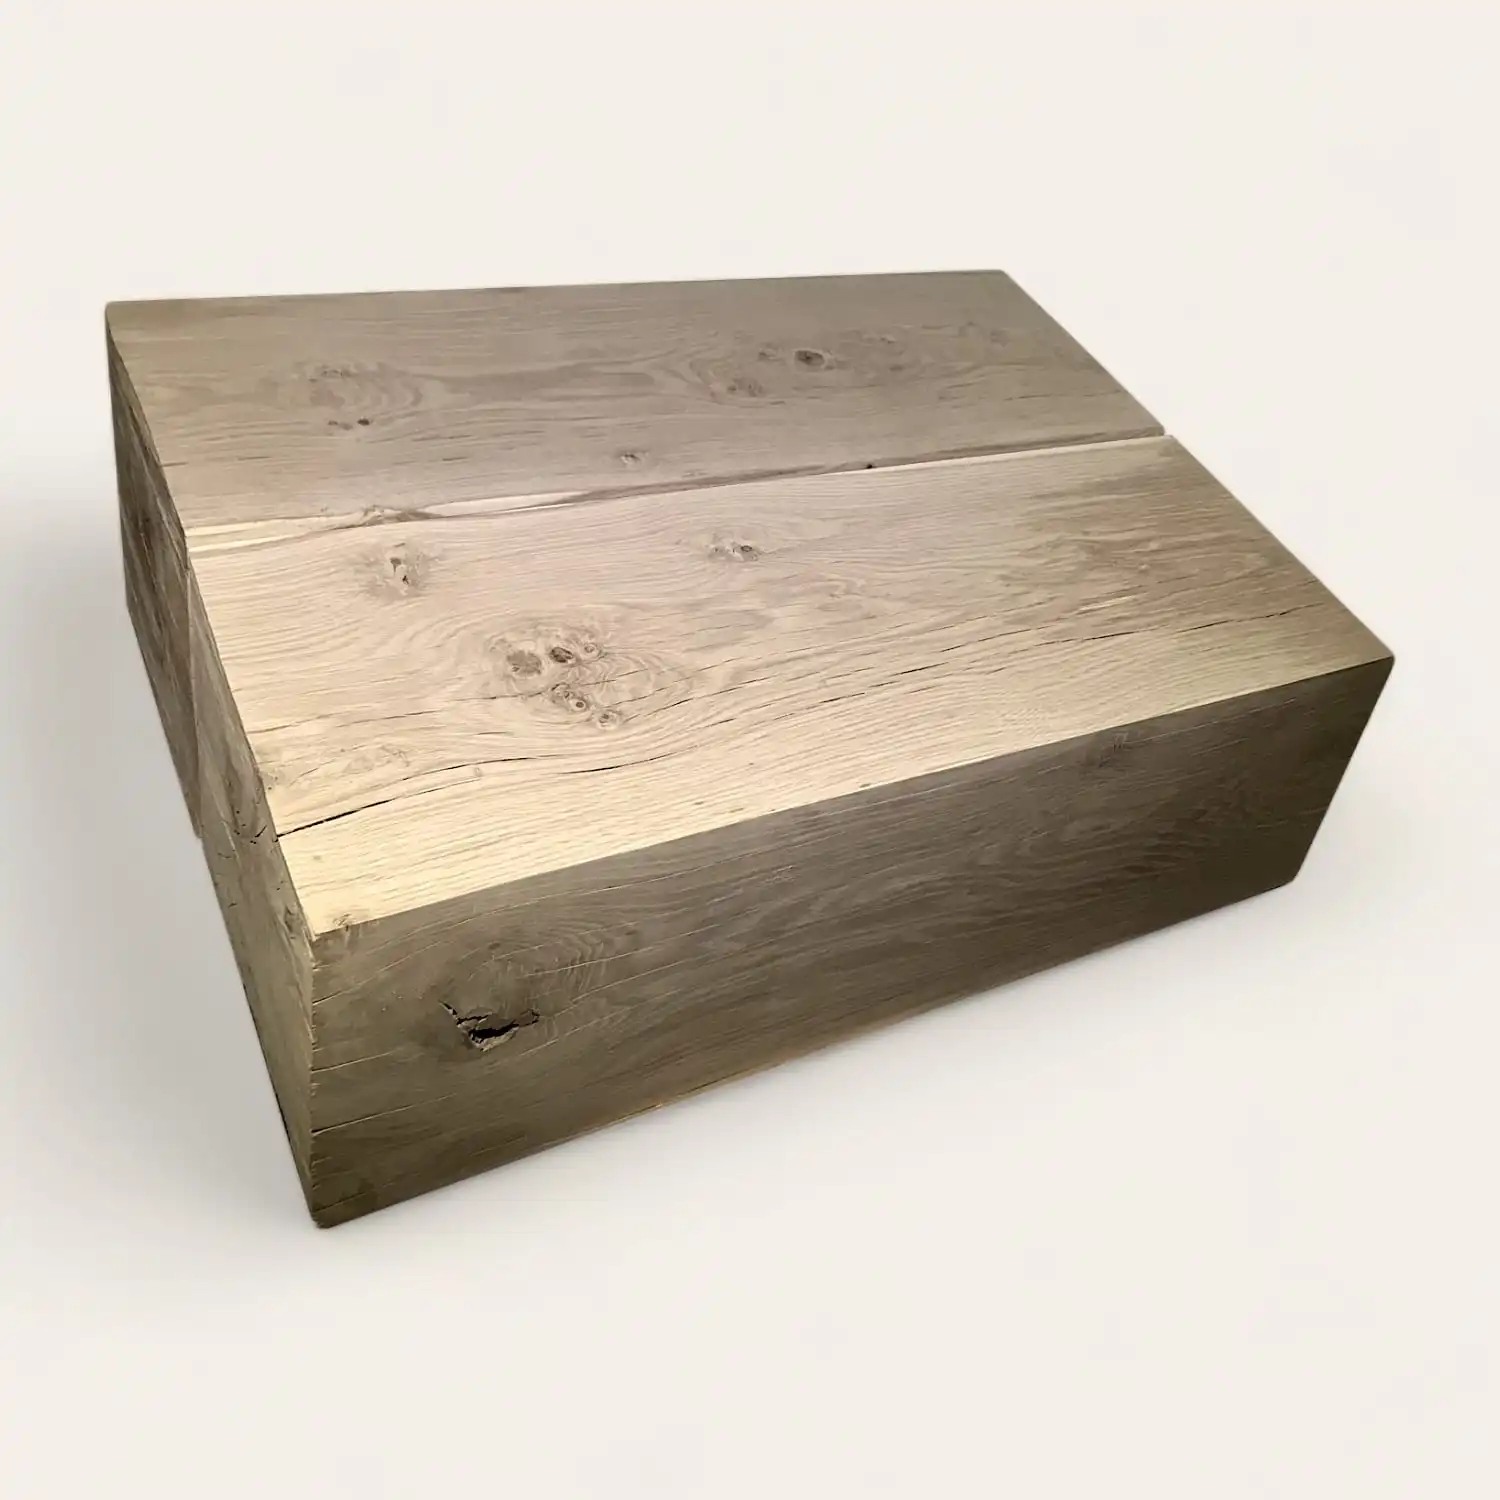  Une boîte en bois ancien sur une surface blanche. 